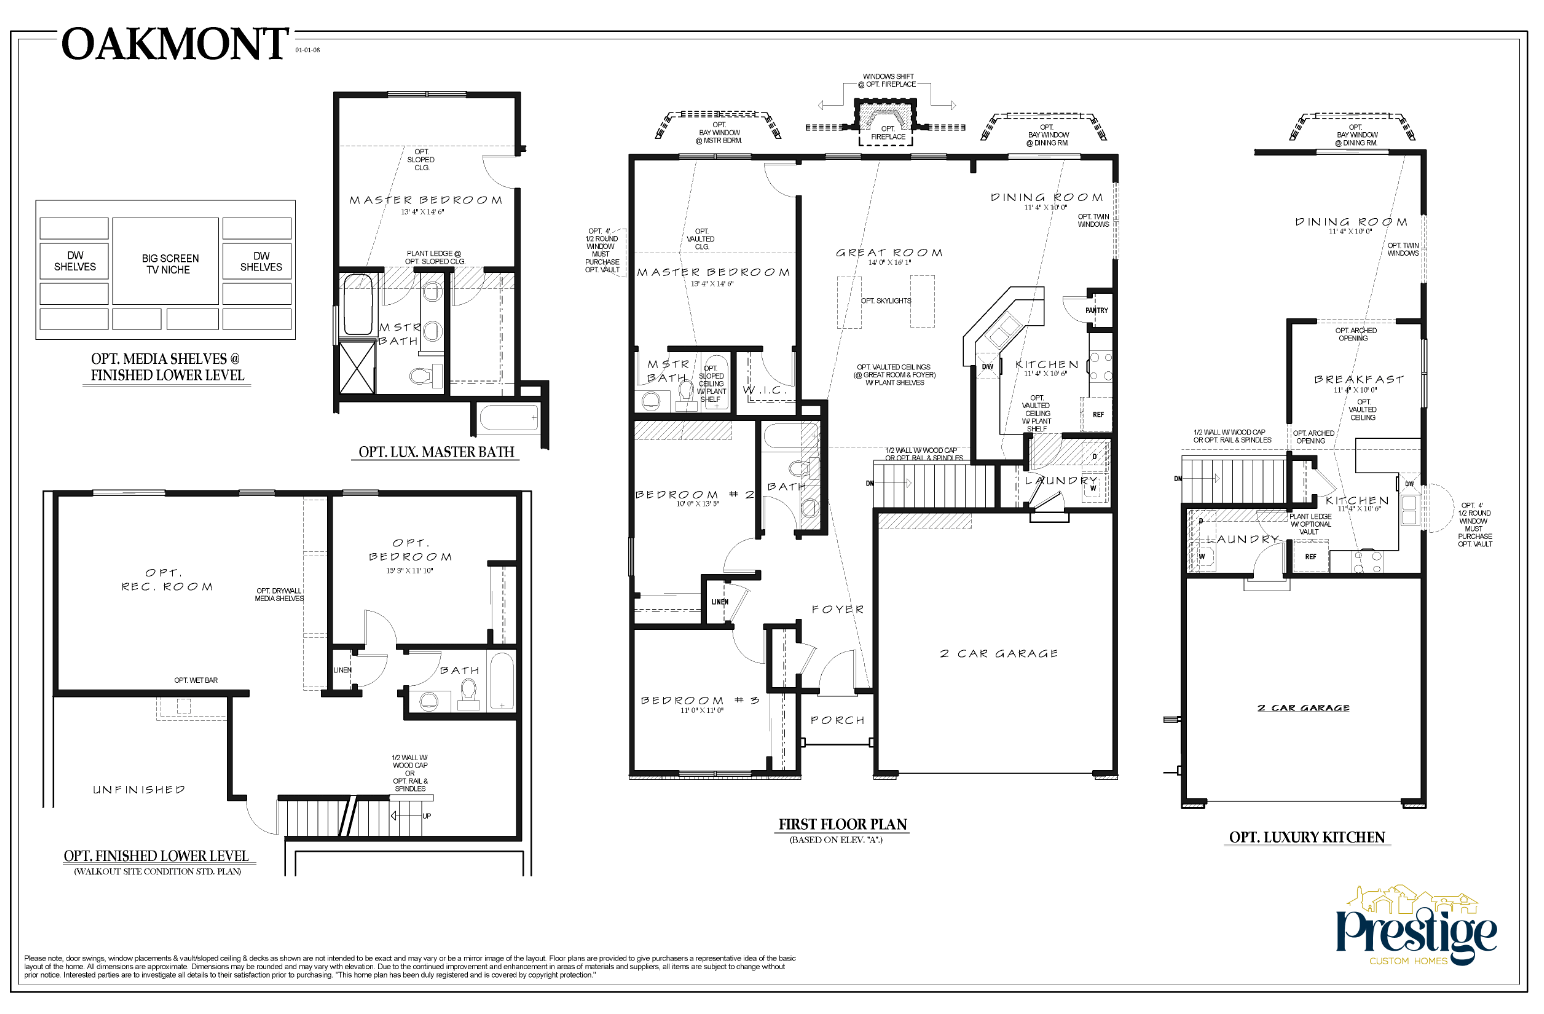 oakmont-floor-plan-prestige-custom-homes